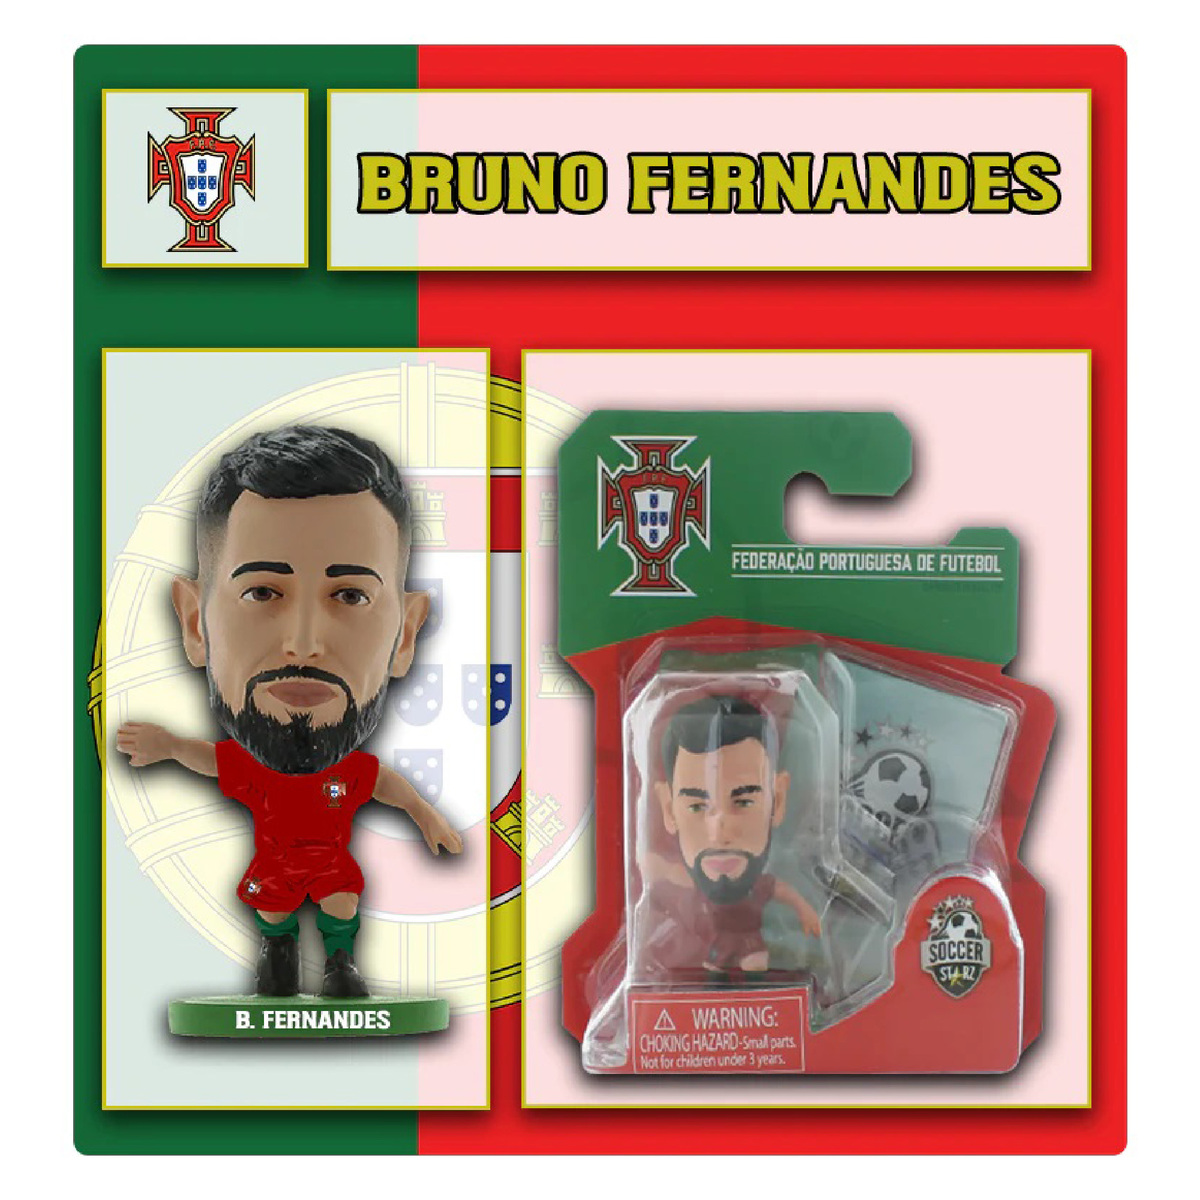 Soccerstarz Portugal Bruno Fernandes Home Kit Figure, 405078